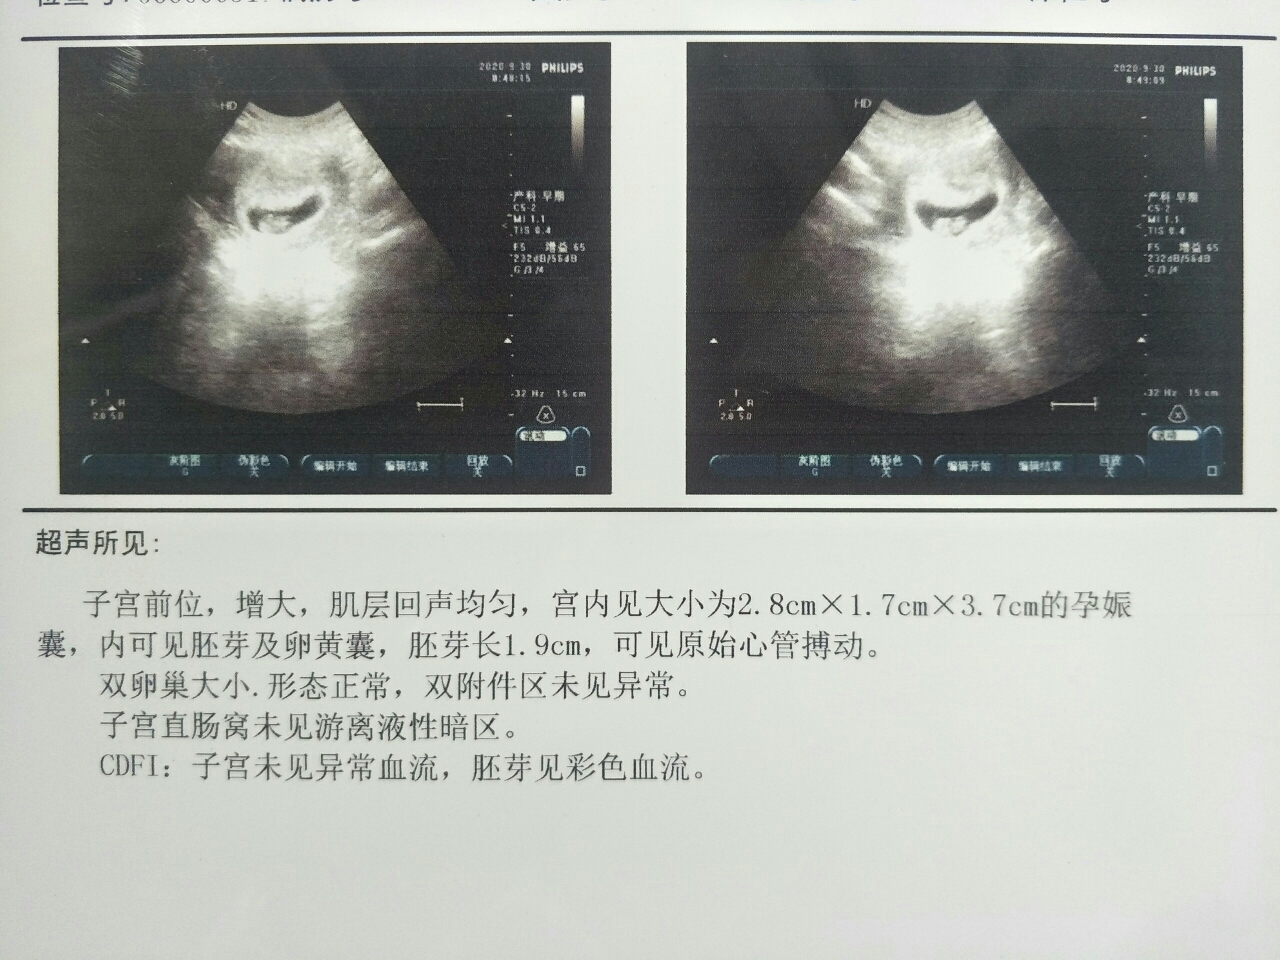 孕8周胎儿图辨别男女图片